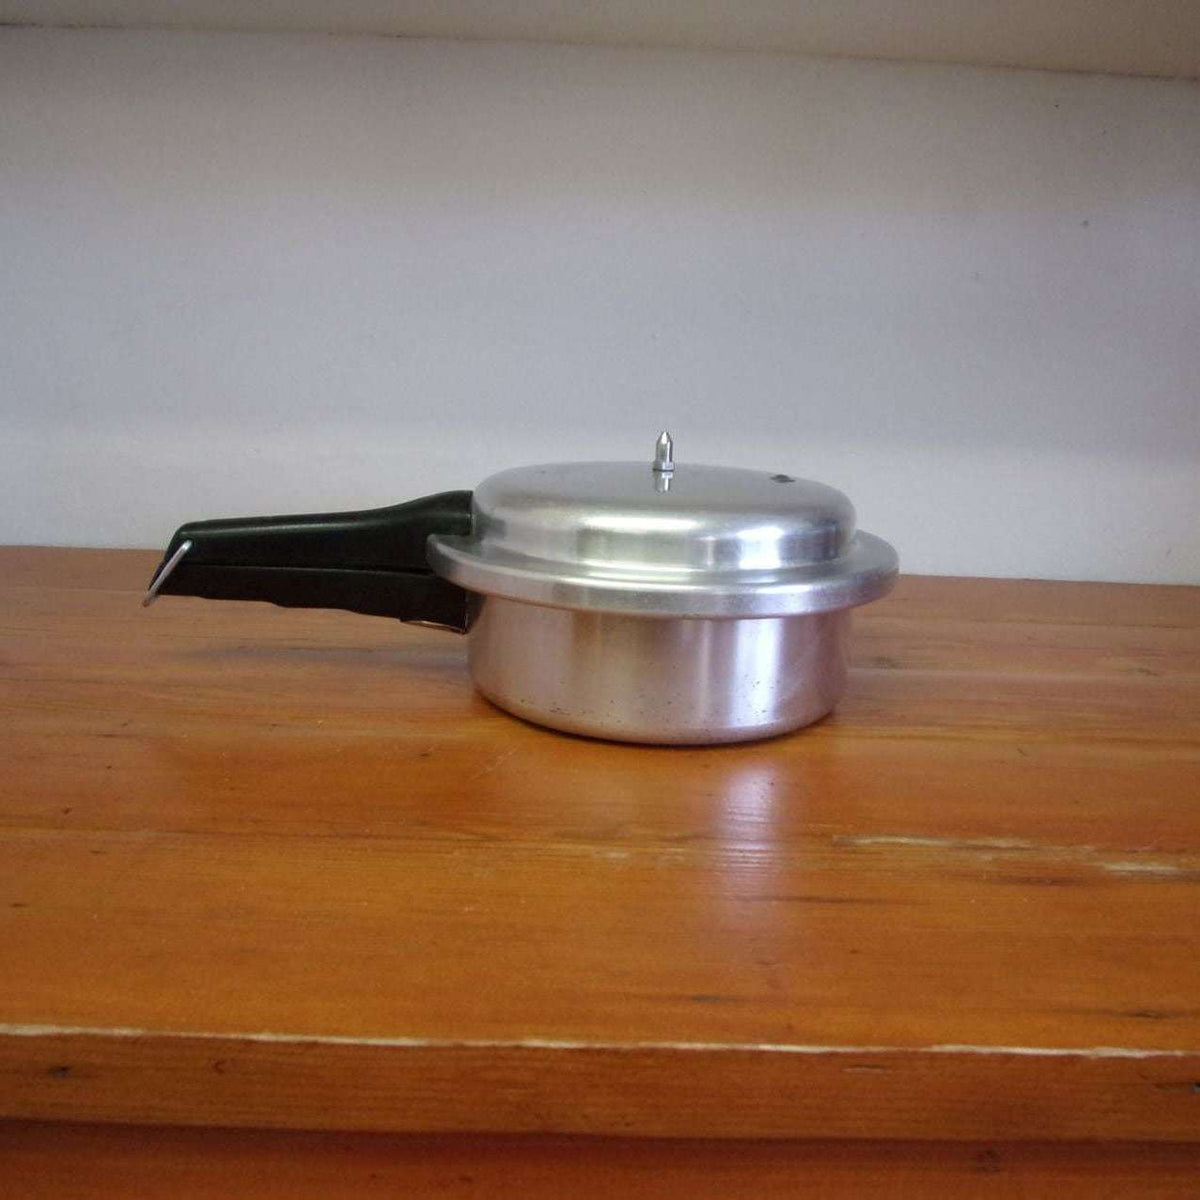 http://maandpasattic.com/cdn/shop/products/vintage-mirro-matic-pressure-cooker-2-12-quart-aluminum-cookware-ma-and-pas-attic-31938819_1200x1200.jpg?v=1675459622